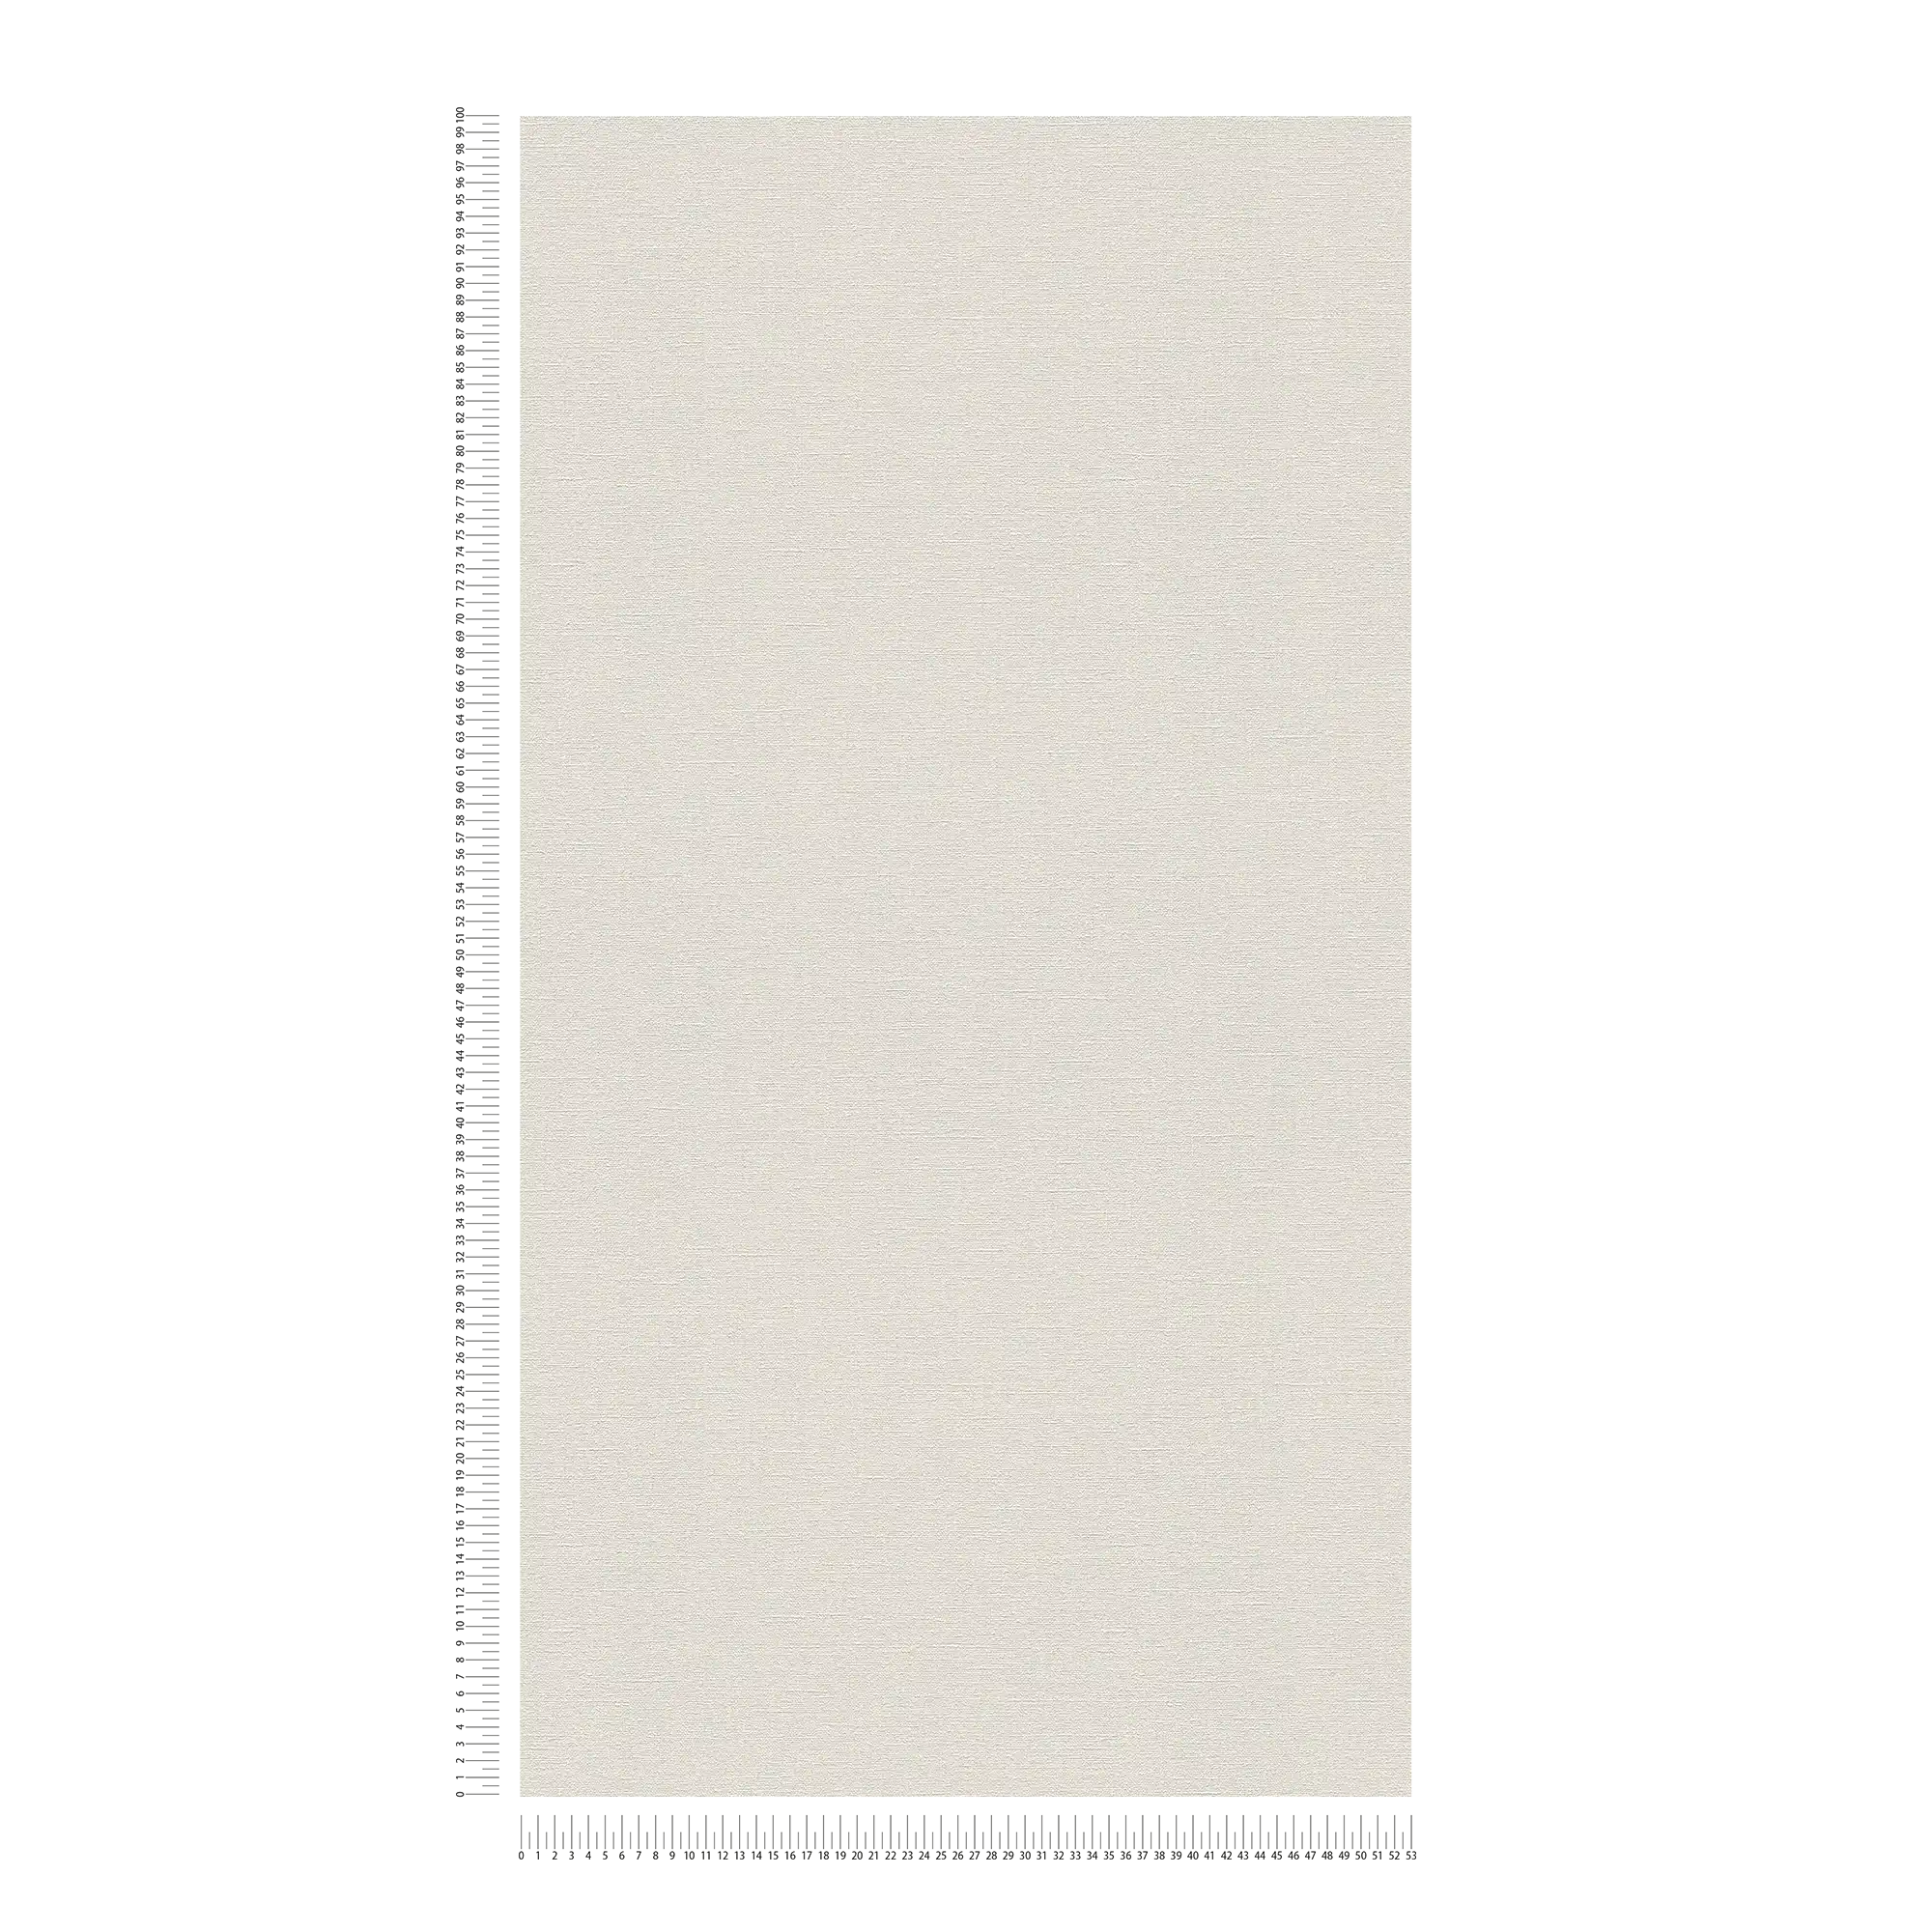             Papier peint gris clair uni & mat avec motifs structurés
        